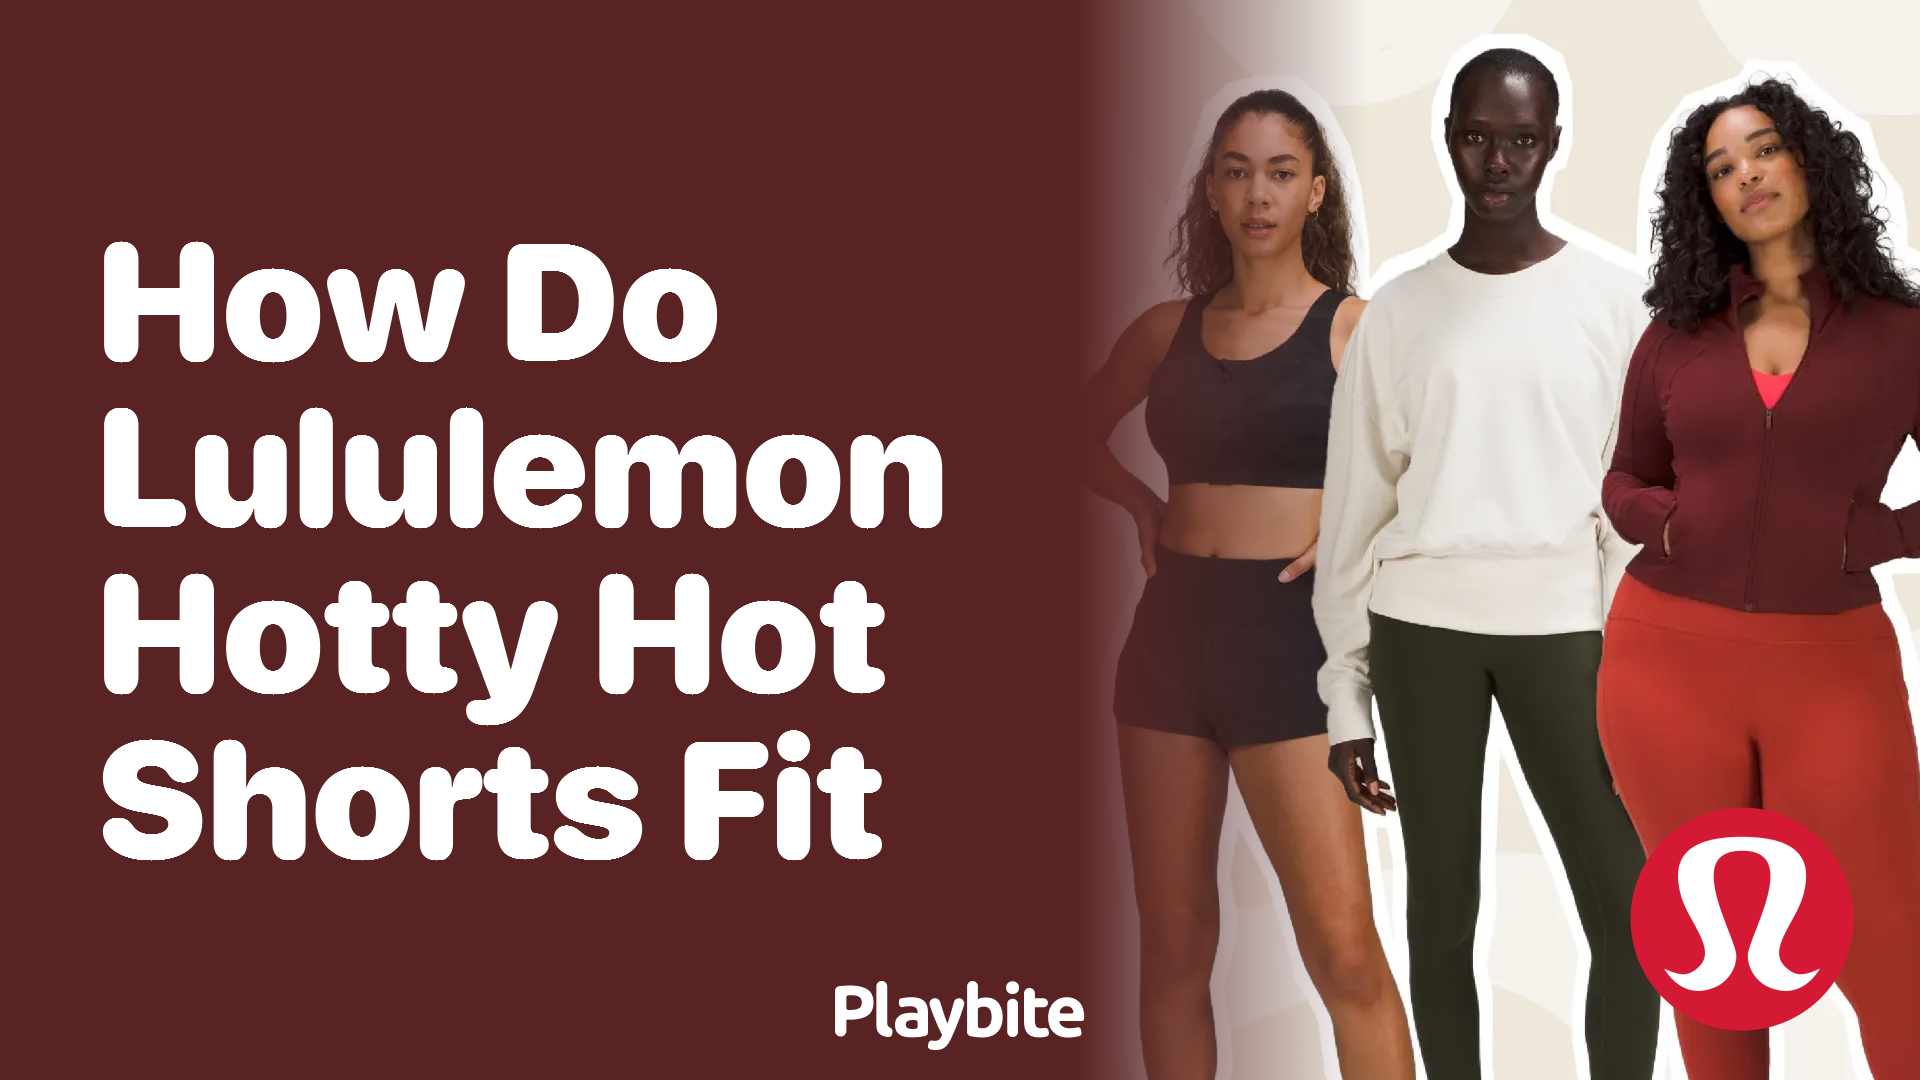 How Do Lululemon Hotty Hot Shorts Fit? - Playbite